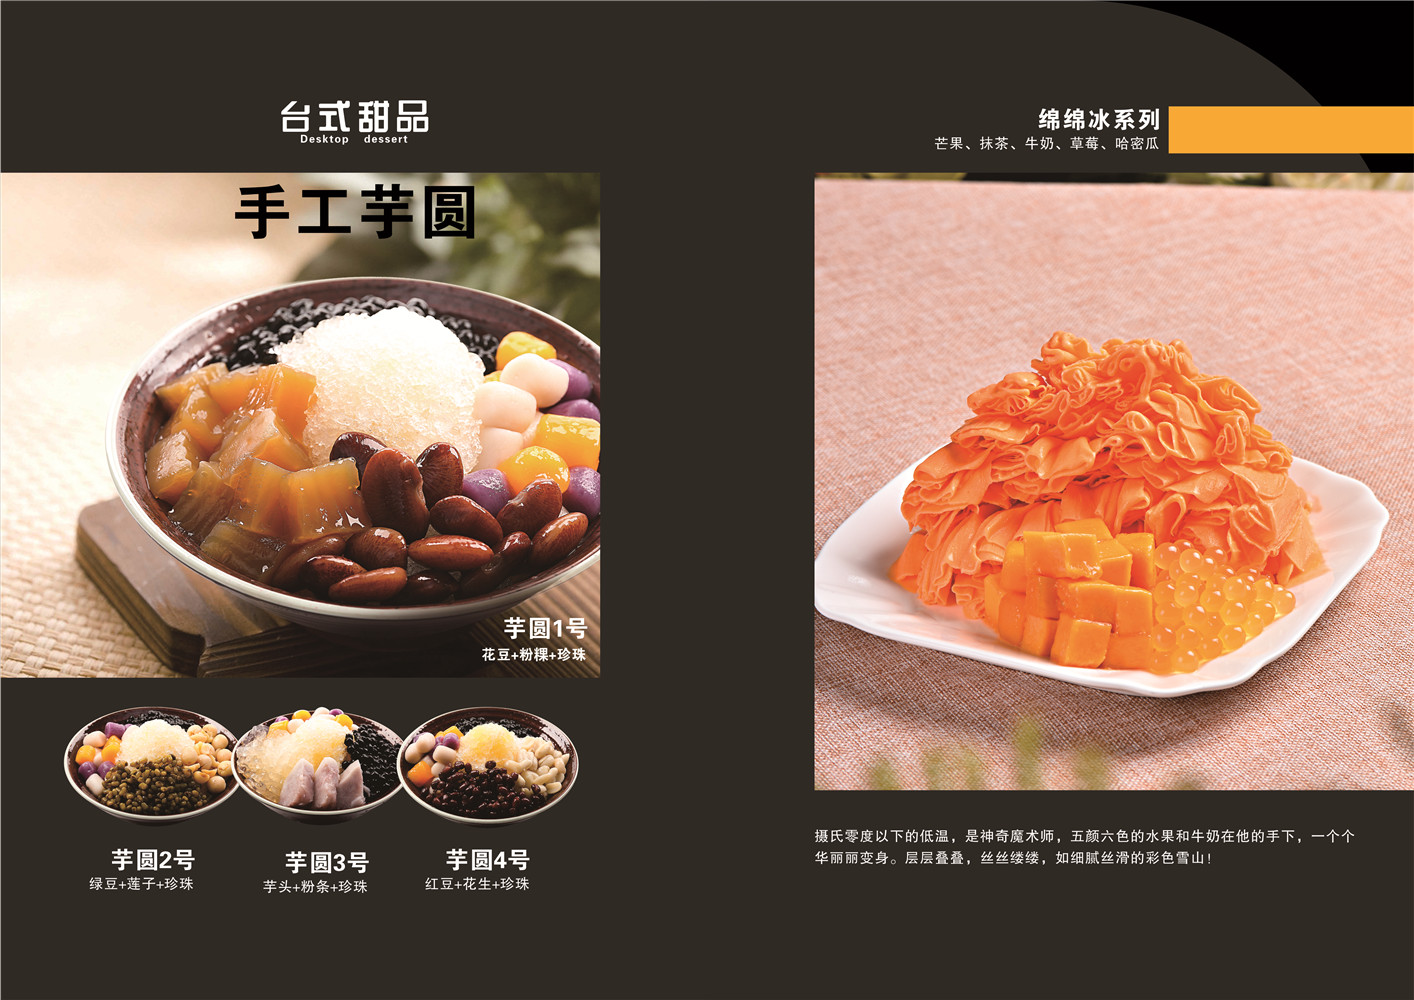 广州口口乐餐饮管理服务有限公司，引领甜品行业发展方向（图）_1